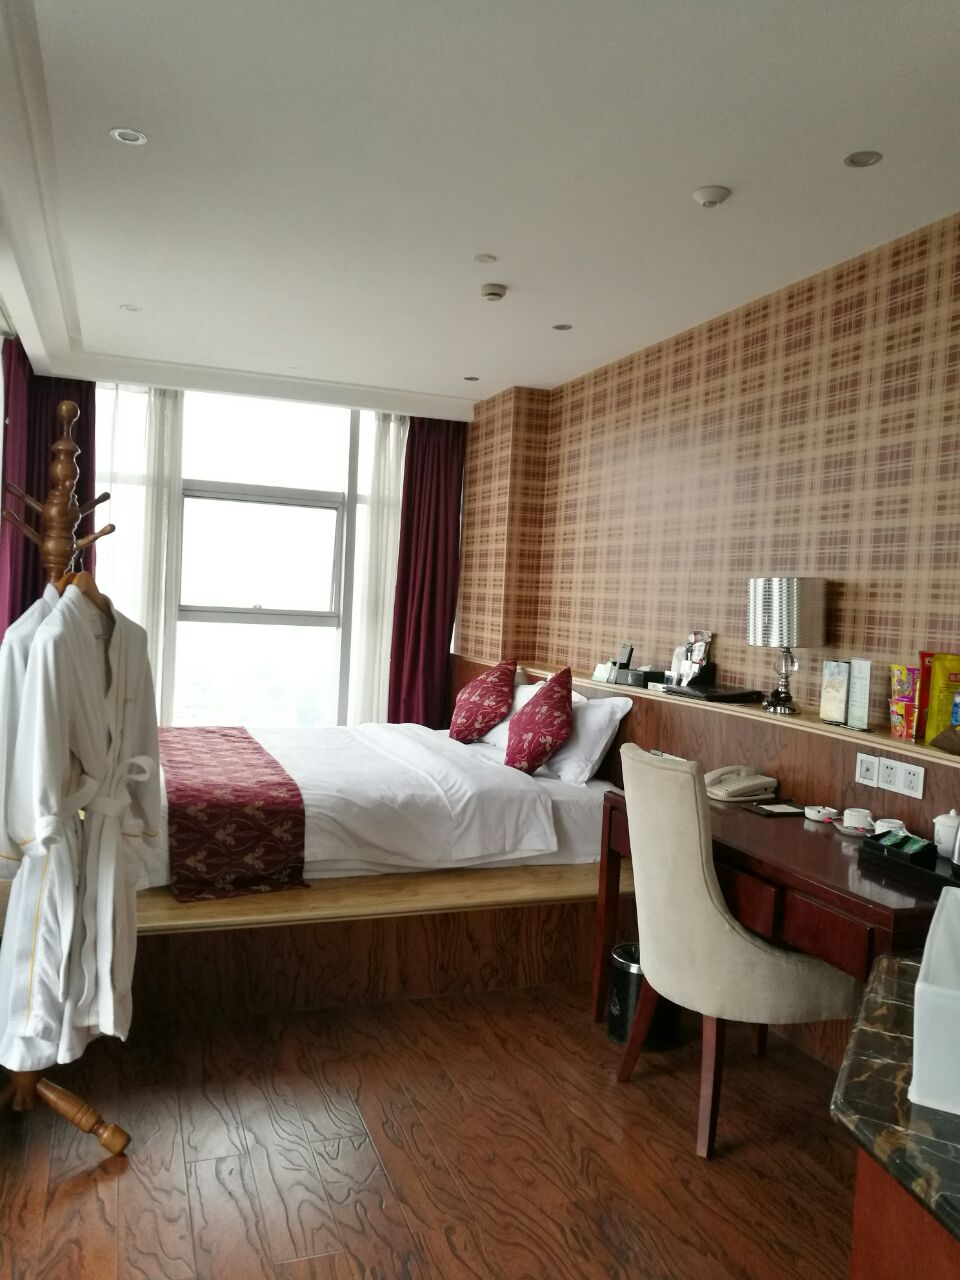 温江拉菲国际酒店图片